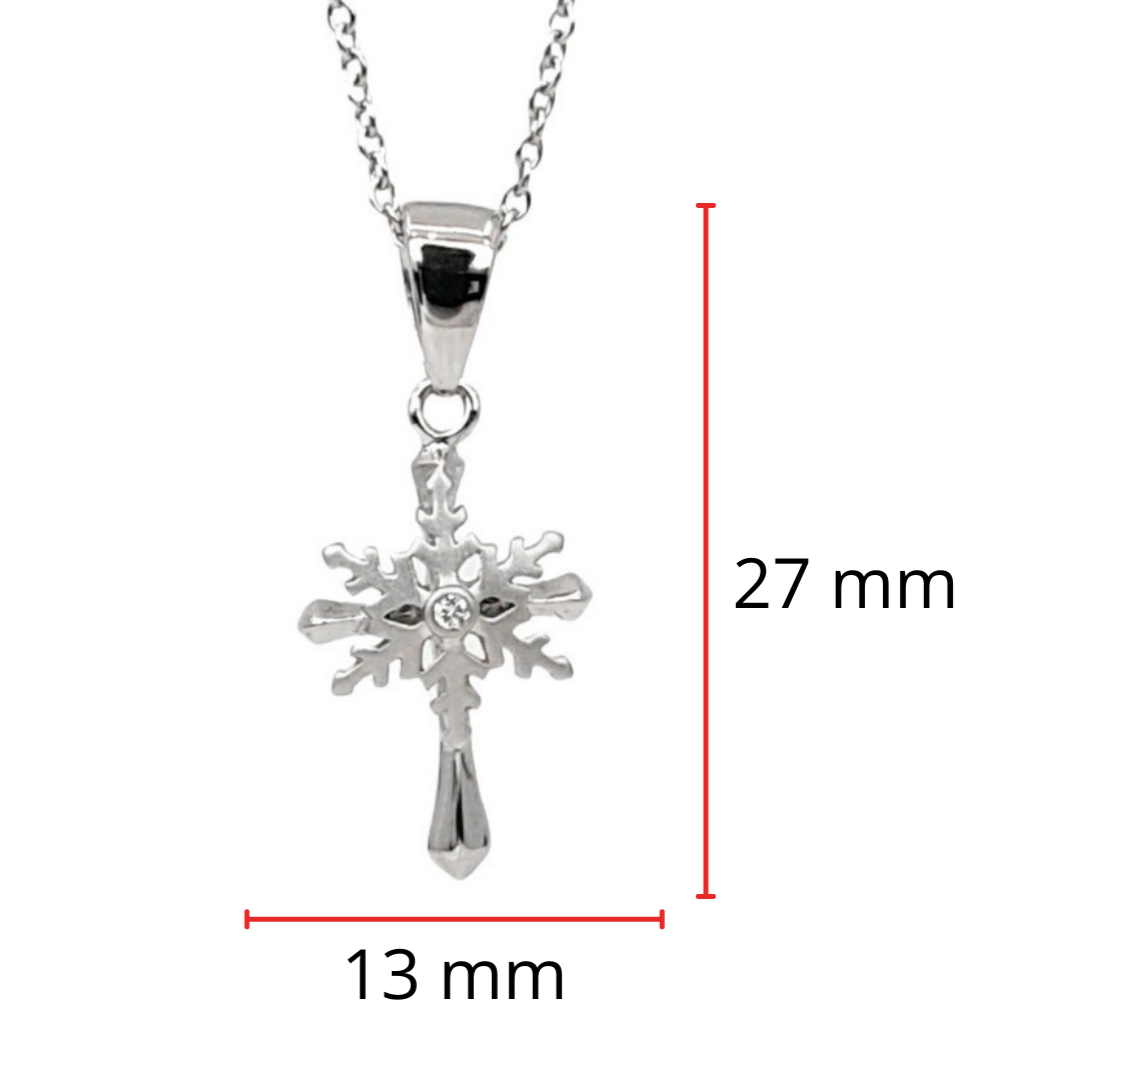 Colgante de cruz del norte de diamantes canadienses de plata de ley 925 de 0,015 quilates